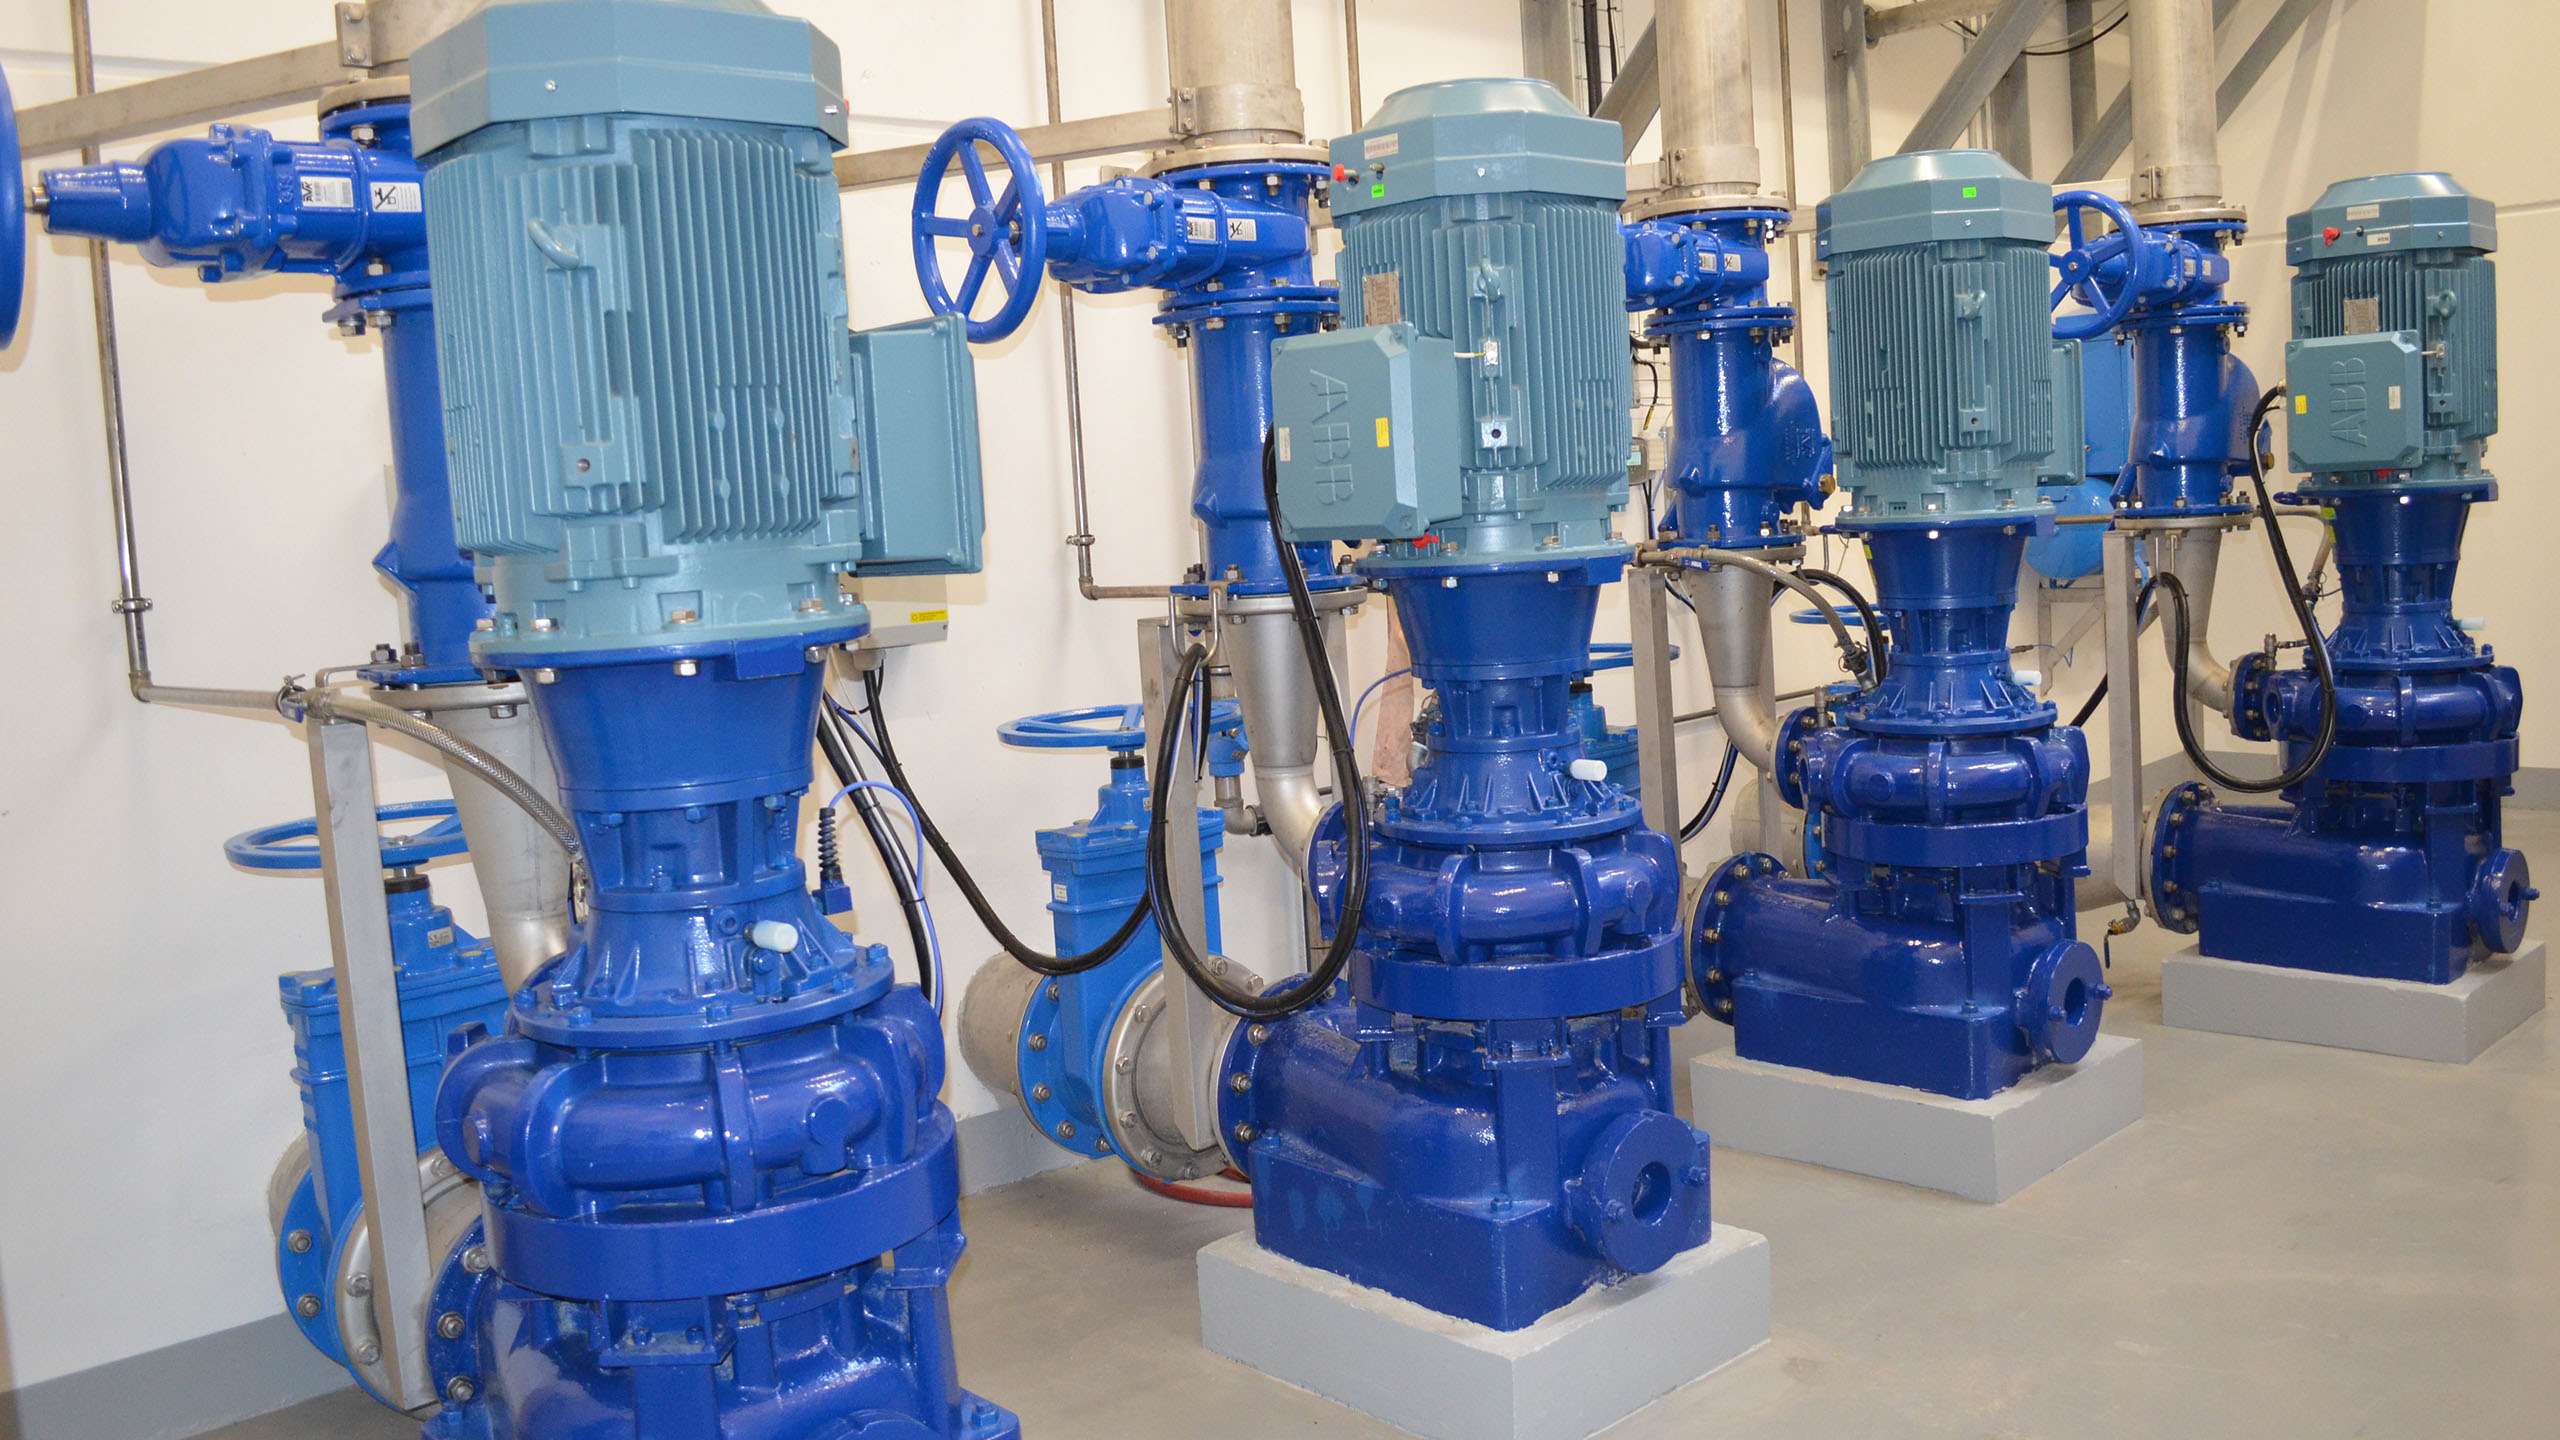 AVK valves installed in a 2014 renovation at Ebeltoft pumping station, Denmark